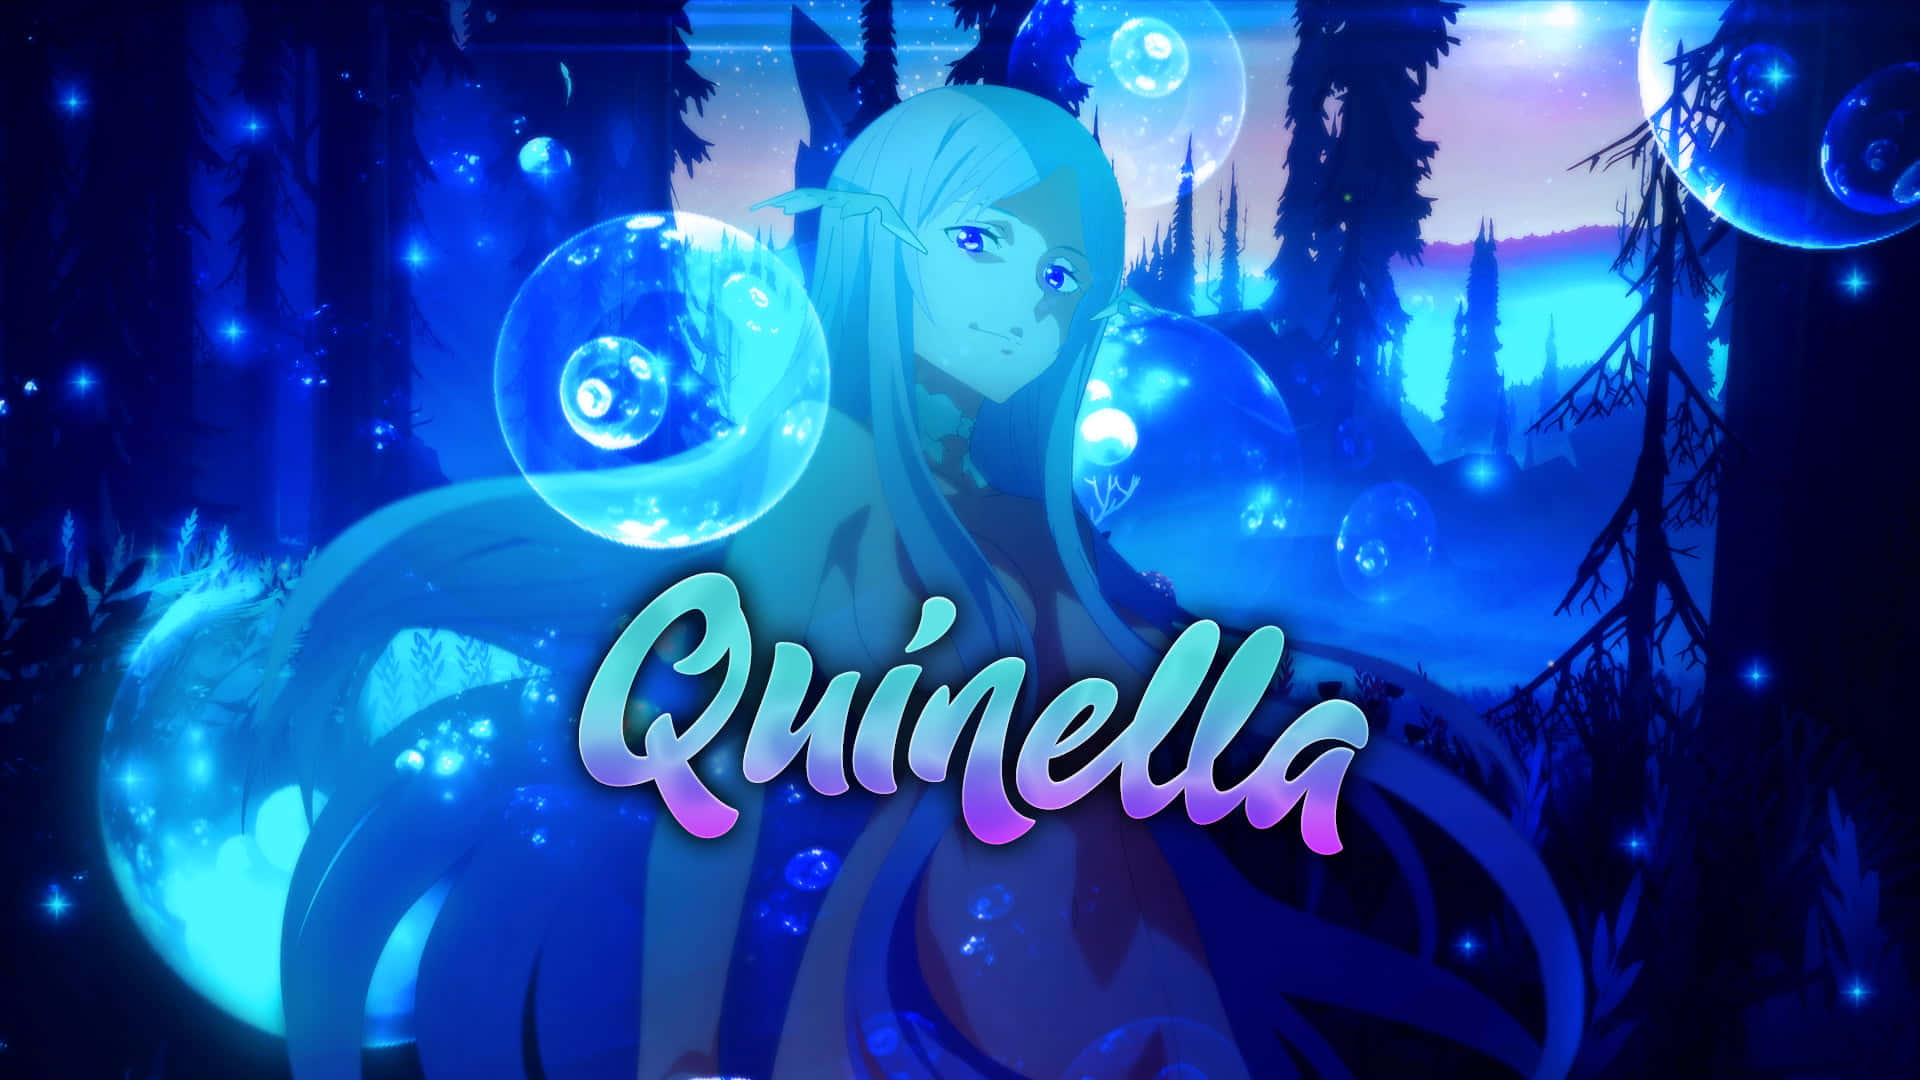 Sword Art Online's Quinella in an intense scene Wallpaper